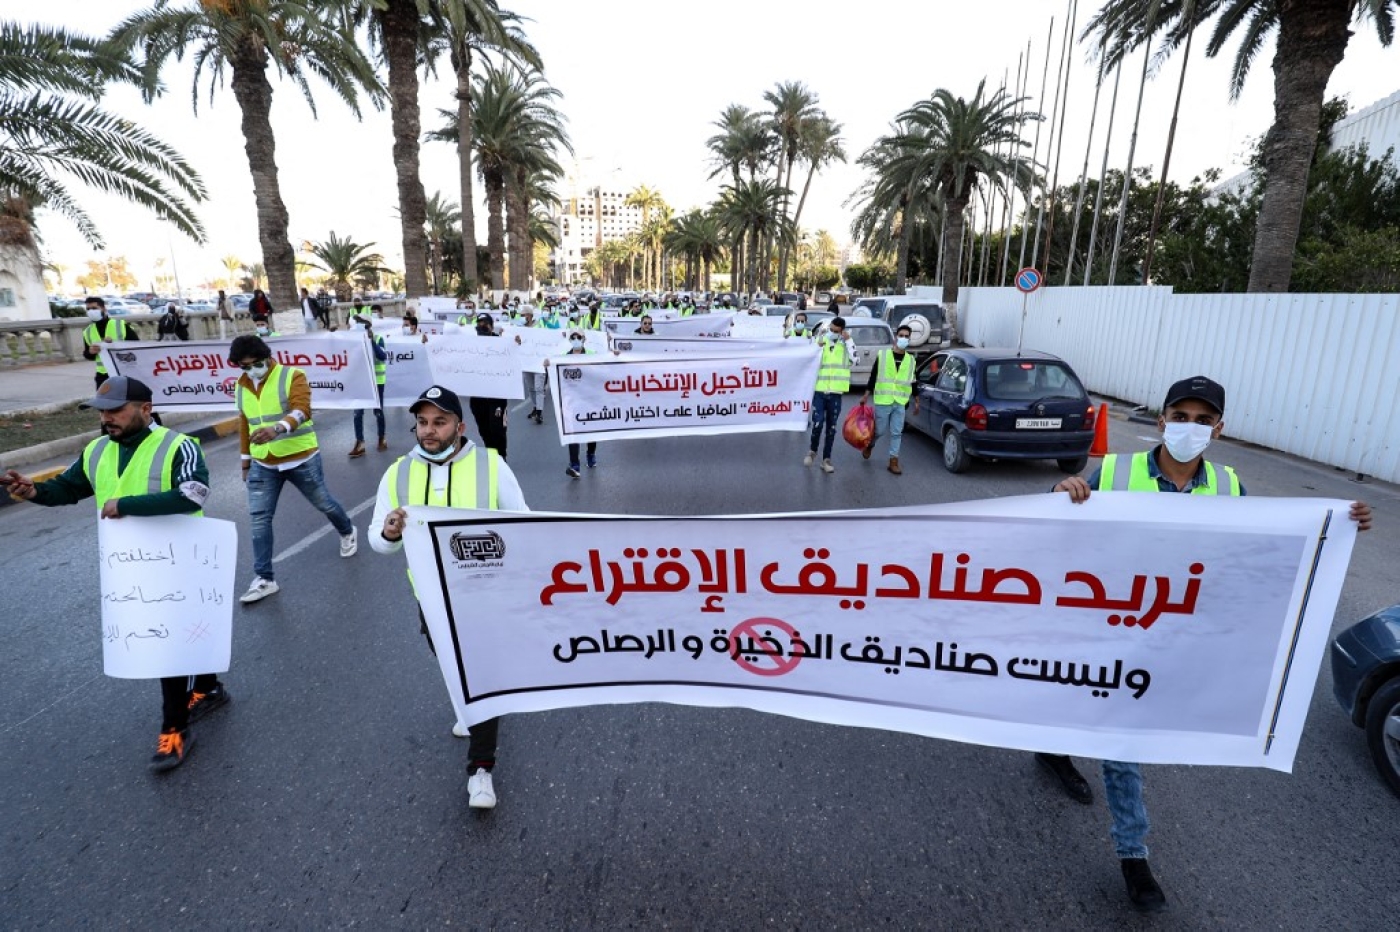 De jeunes militants libyens manifestent contre le report des élections présidentielles sur la place des Martyrs de la capitale Tripoli, le 25 décembre 2021. La banderole dit en arabe : « Nous voulons des urnes, pas des boîtes de munitions ». (AFP/Mahmud Turkia) 